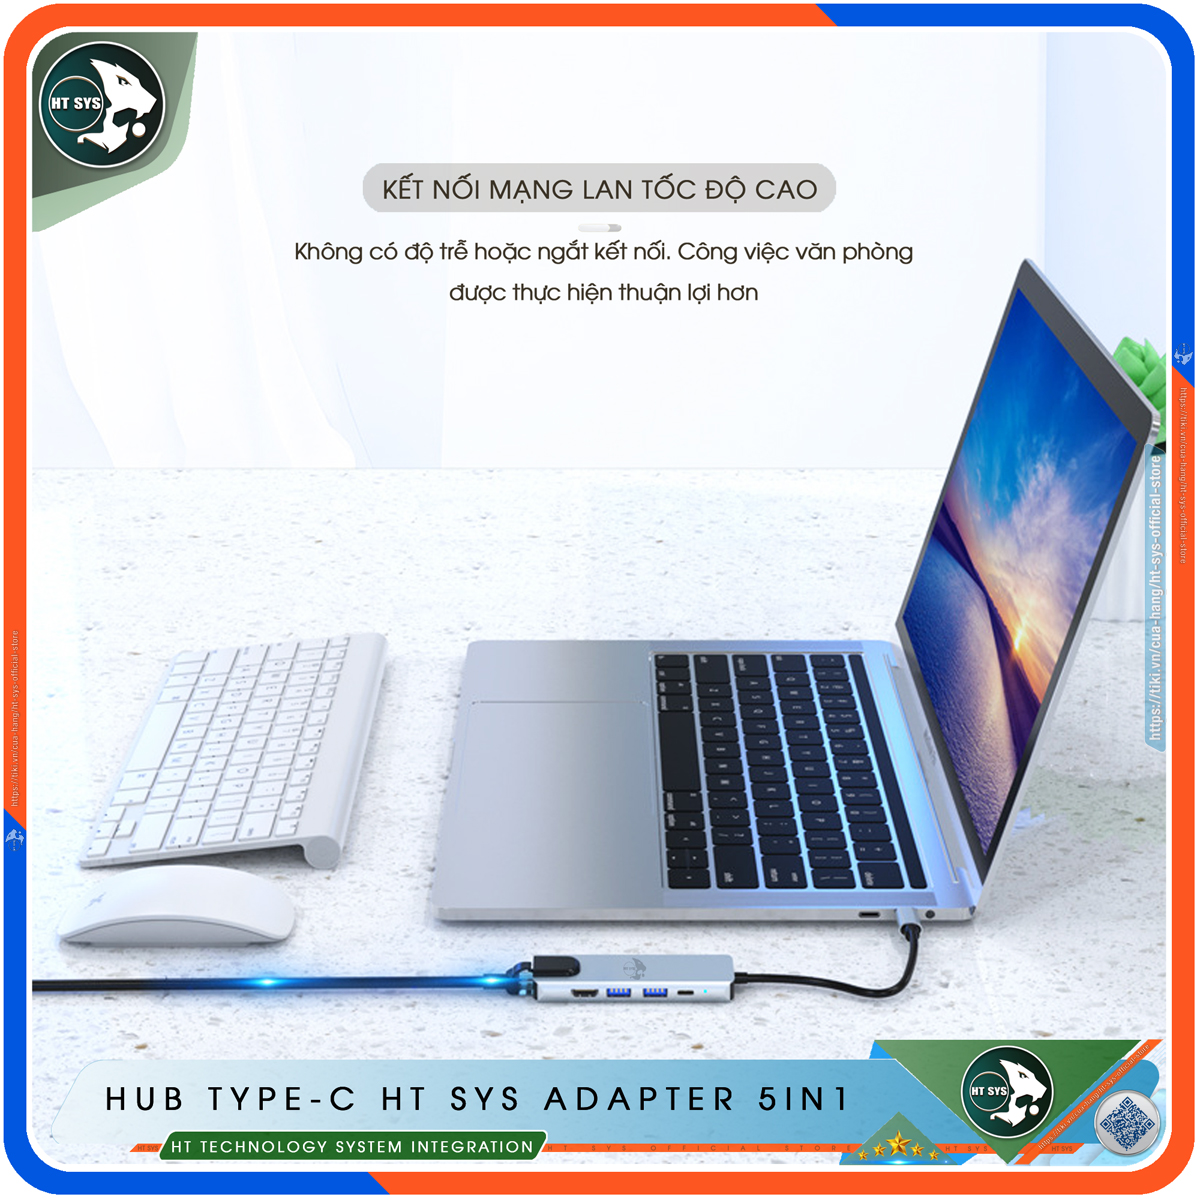 Hub Type C HT SYS 5in1 - Hub Chuyển Đổi USB Type-C To HDMI Chuẩn HDTV - Cổng Mạng Lan / HDMI 4K / USB 3.0 / Sạc Nhanh Type C PD - Kết Nối Nhiều Thiết Bị Với Tốc Độ Cao - Dành Cho MacBook / Tivi / Laptop / PC / Máy Tính Bảng / Smartphone – Hàng Chính Hãng